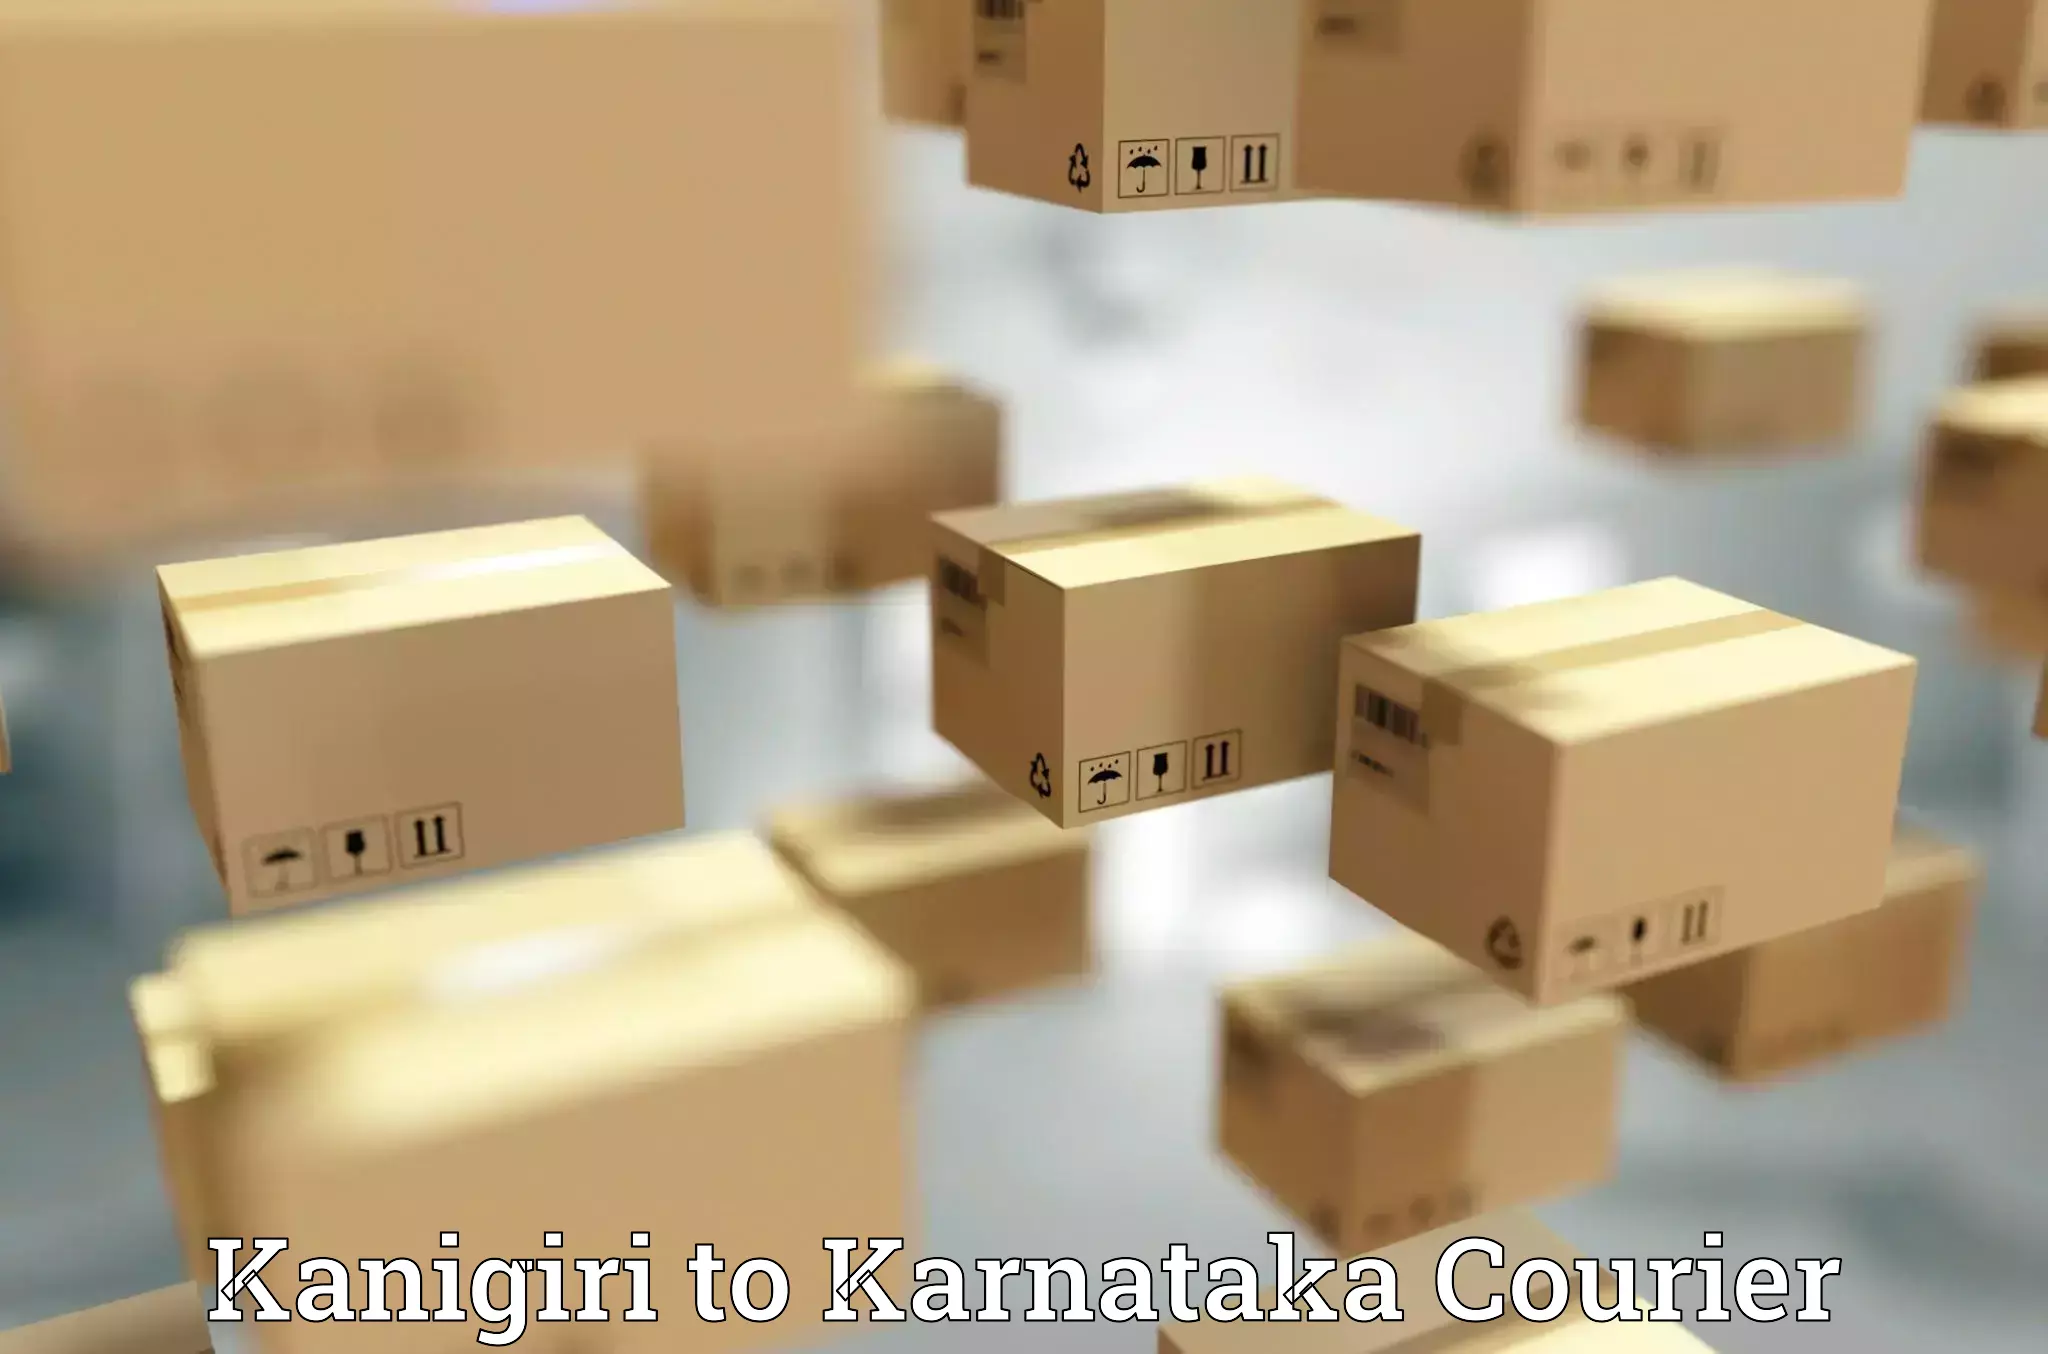 Local courier options in Kanigiri to Karnataka